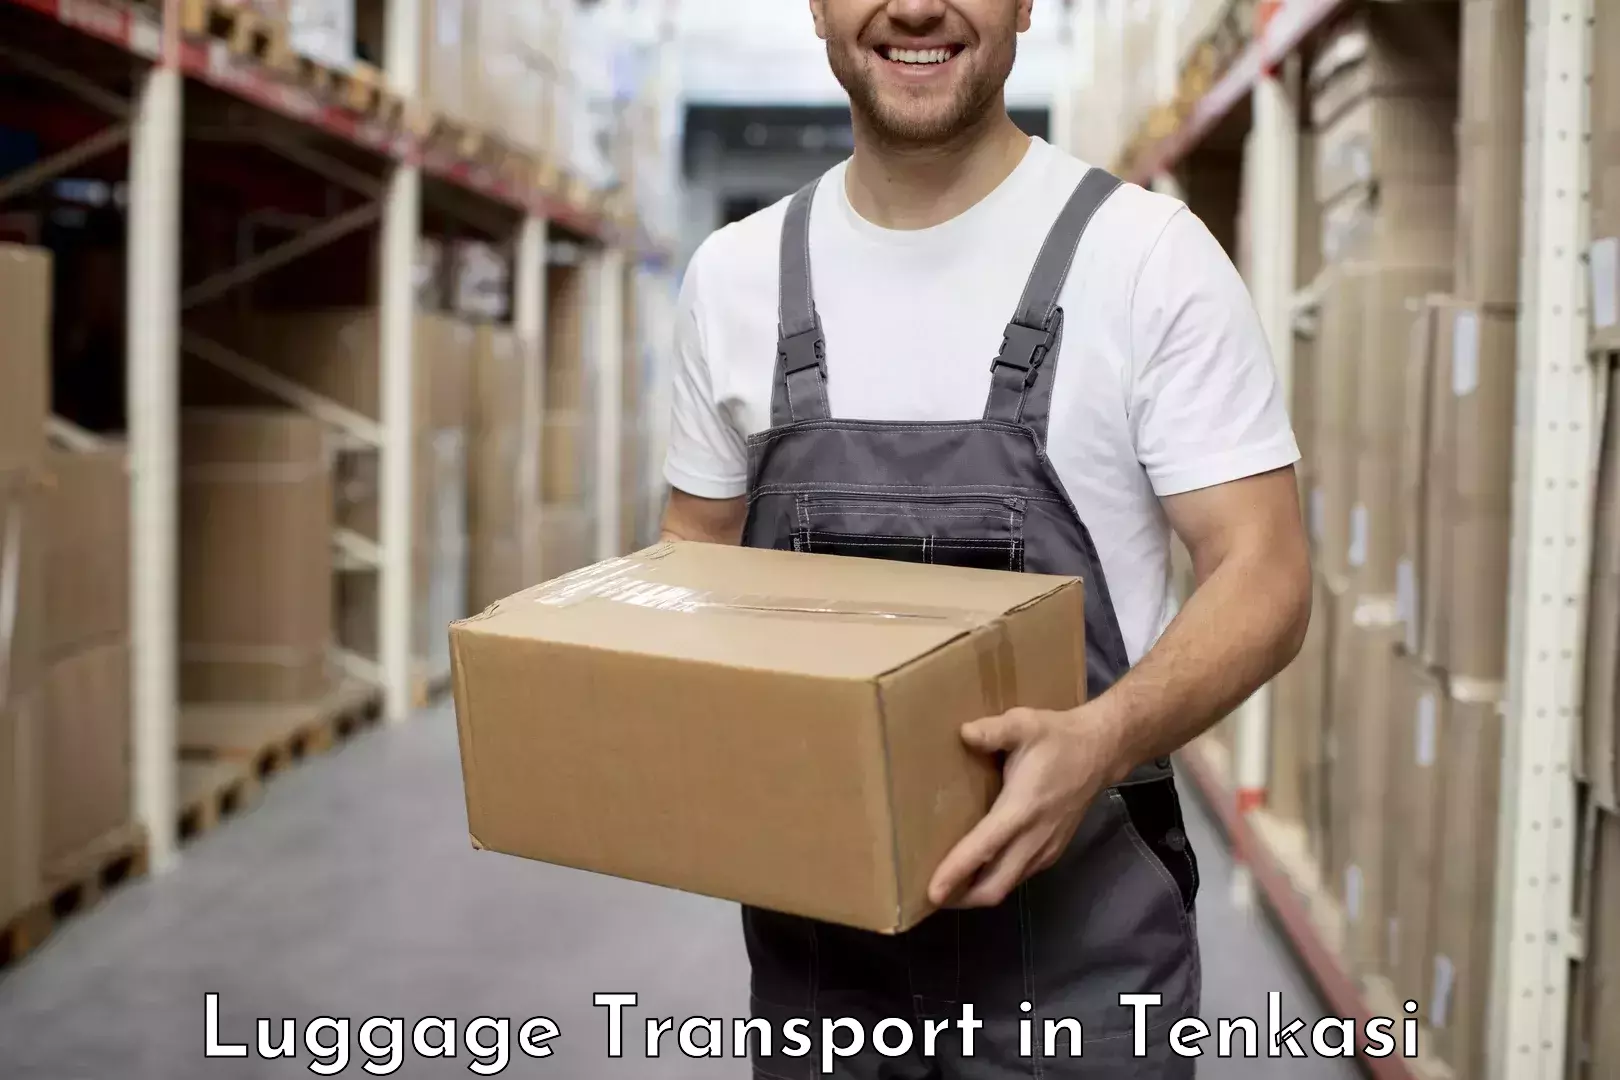 Business luggage transport in Tenkasi